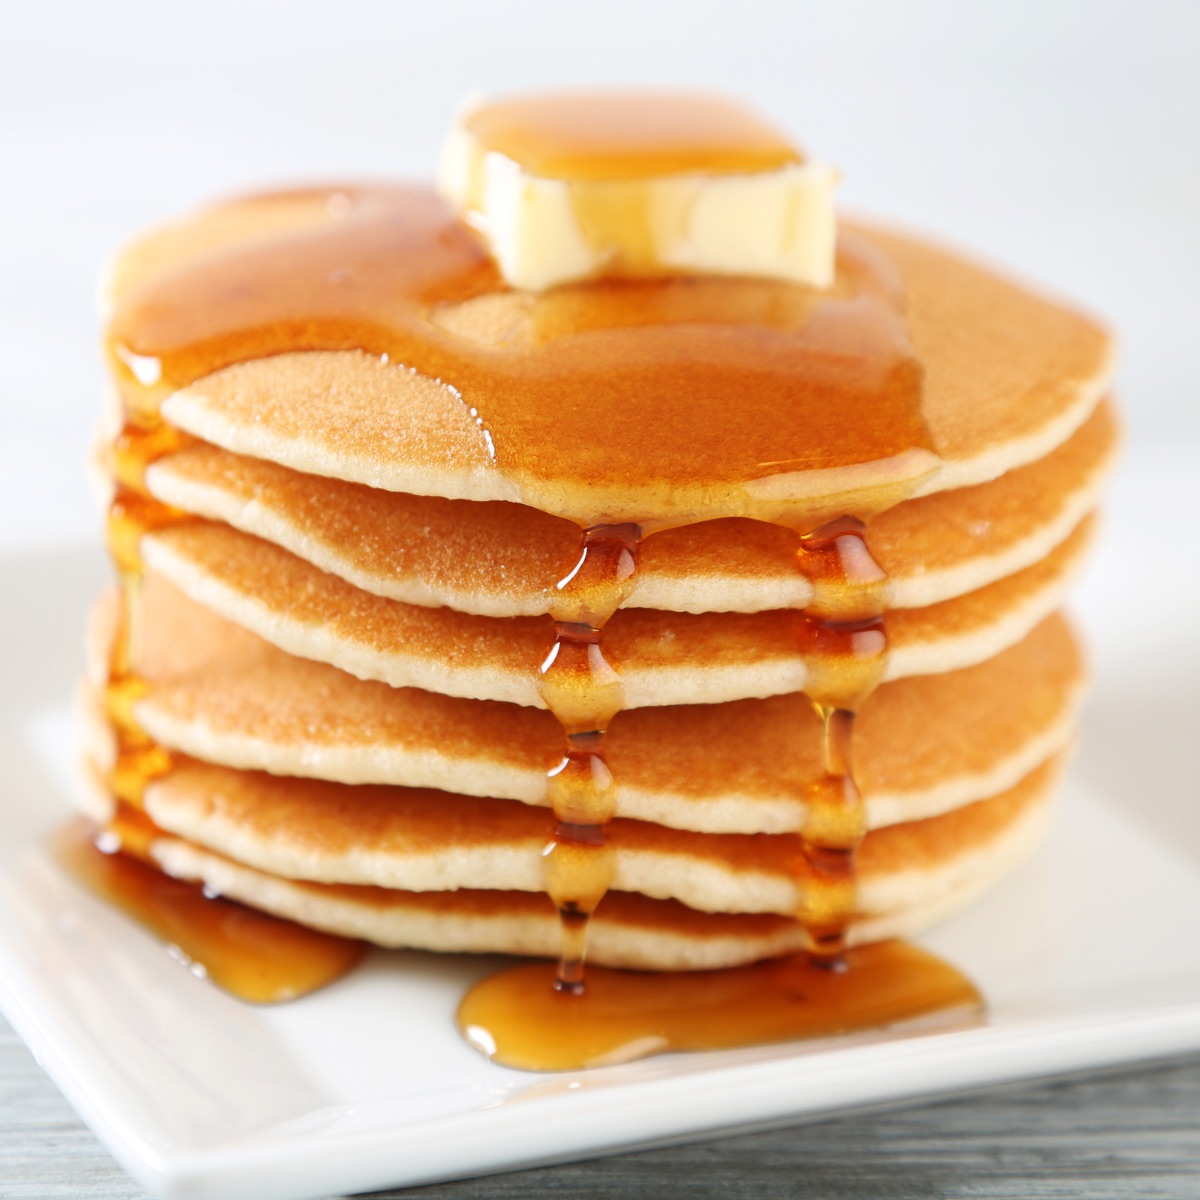 Amerykańskie Pancakes ułożone na talerzu, podane z syropem klonowym i kostką masła.